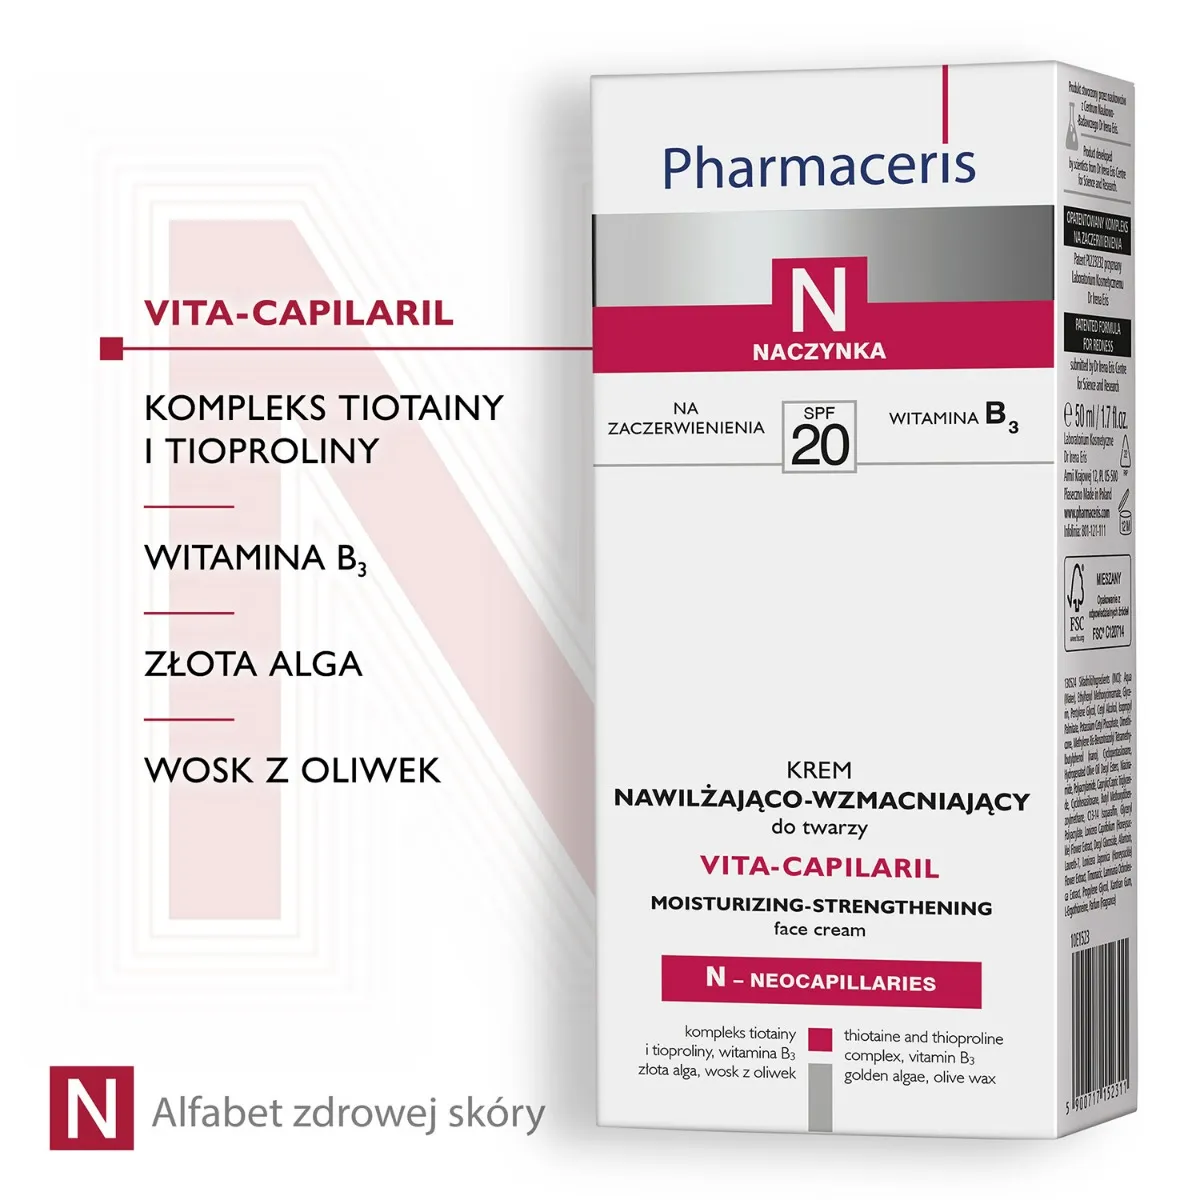 Pharmaceris N Vita-Capilaril, SPF 20, krem nawilżająco-wzmacniający do twarzy SPF20, 50 ml 